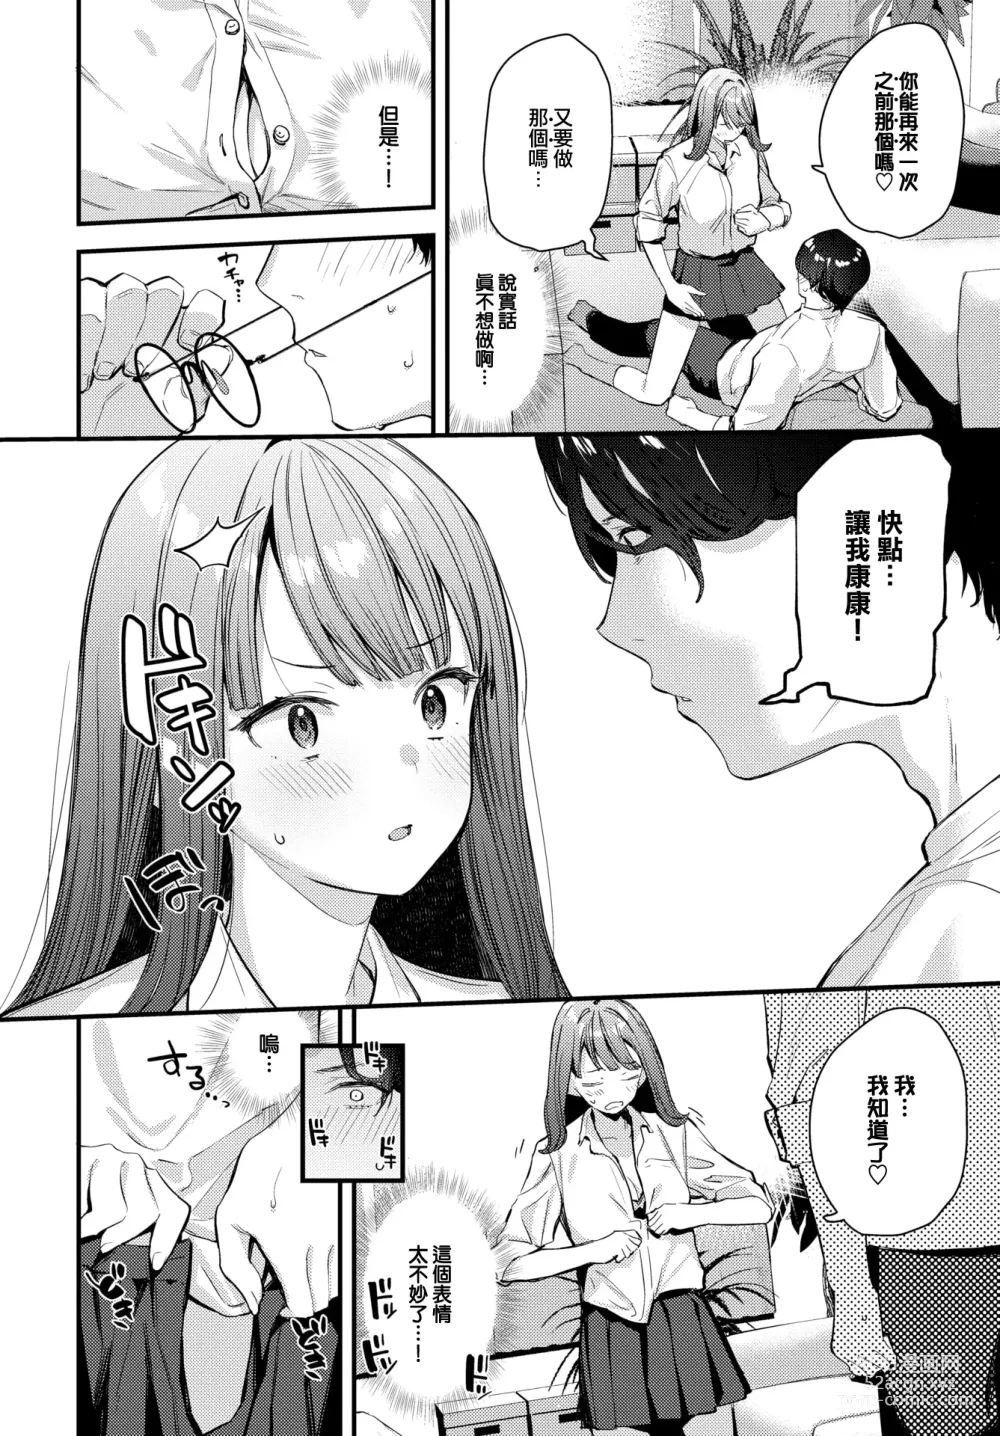 Page 9 of manga Bokudake no Hana ~Jouhen~